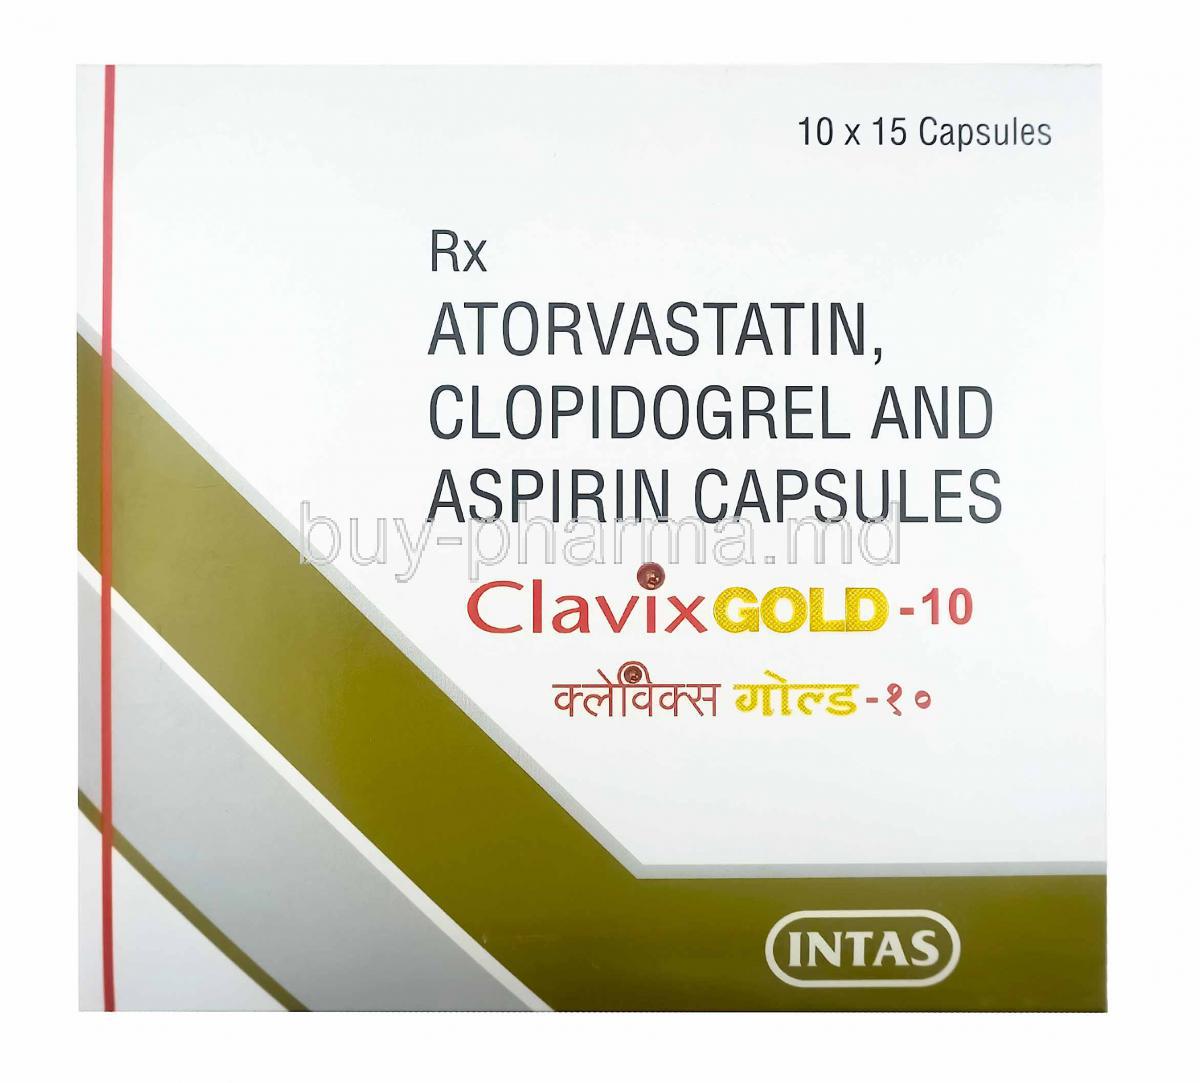 Clavix Gold, Aspirin low strength, Atorvastatin and Clopidogrel 10mg